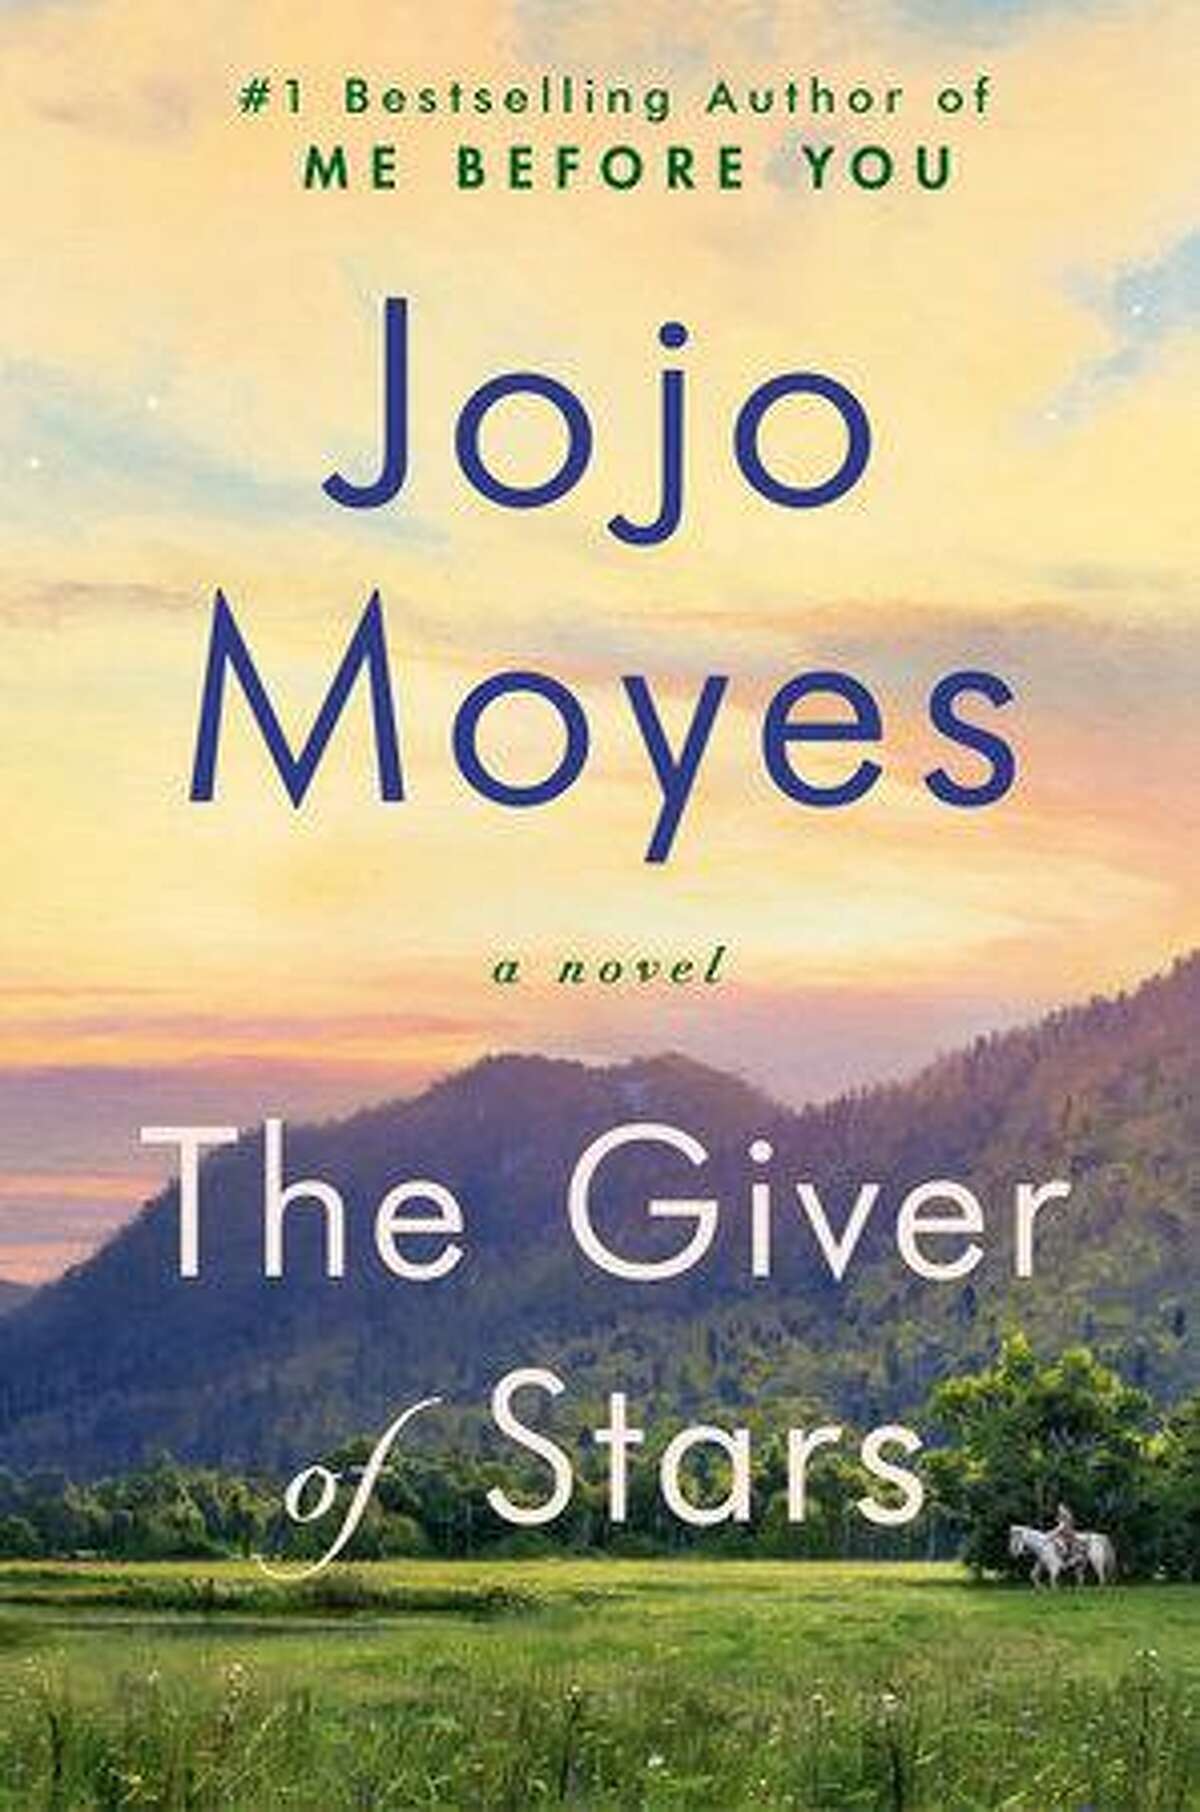 Jojo Moyes’ latest novel “The Giver of Stars” was published on Oct. 8.